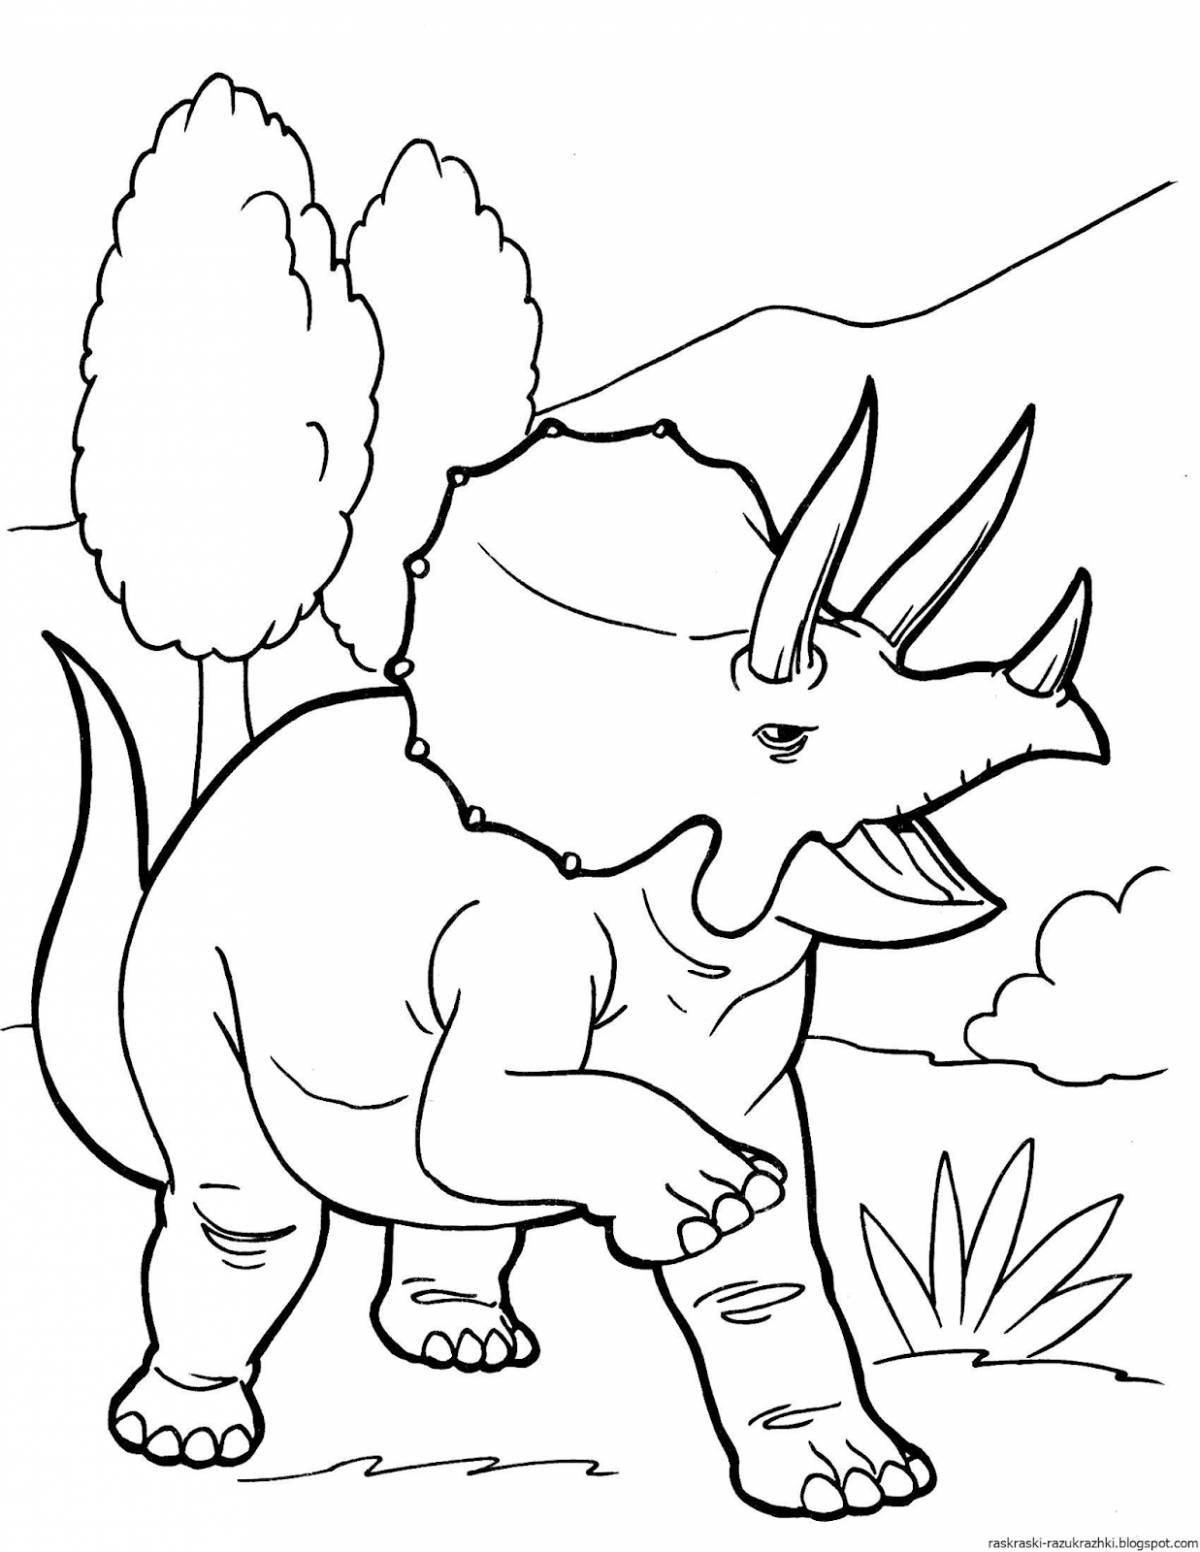 Printable dinosaurs for kids #18